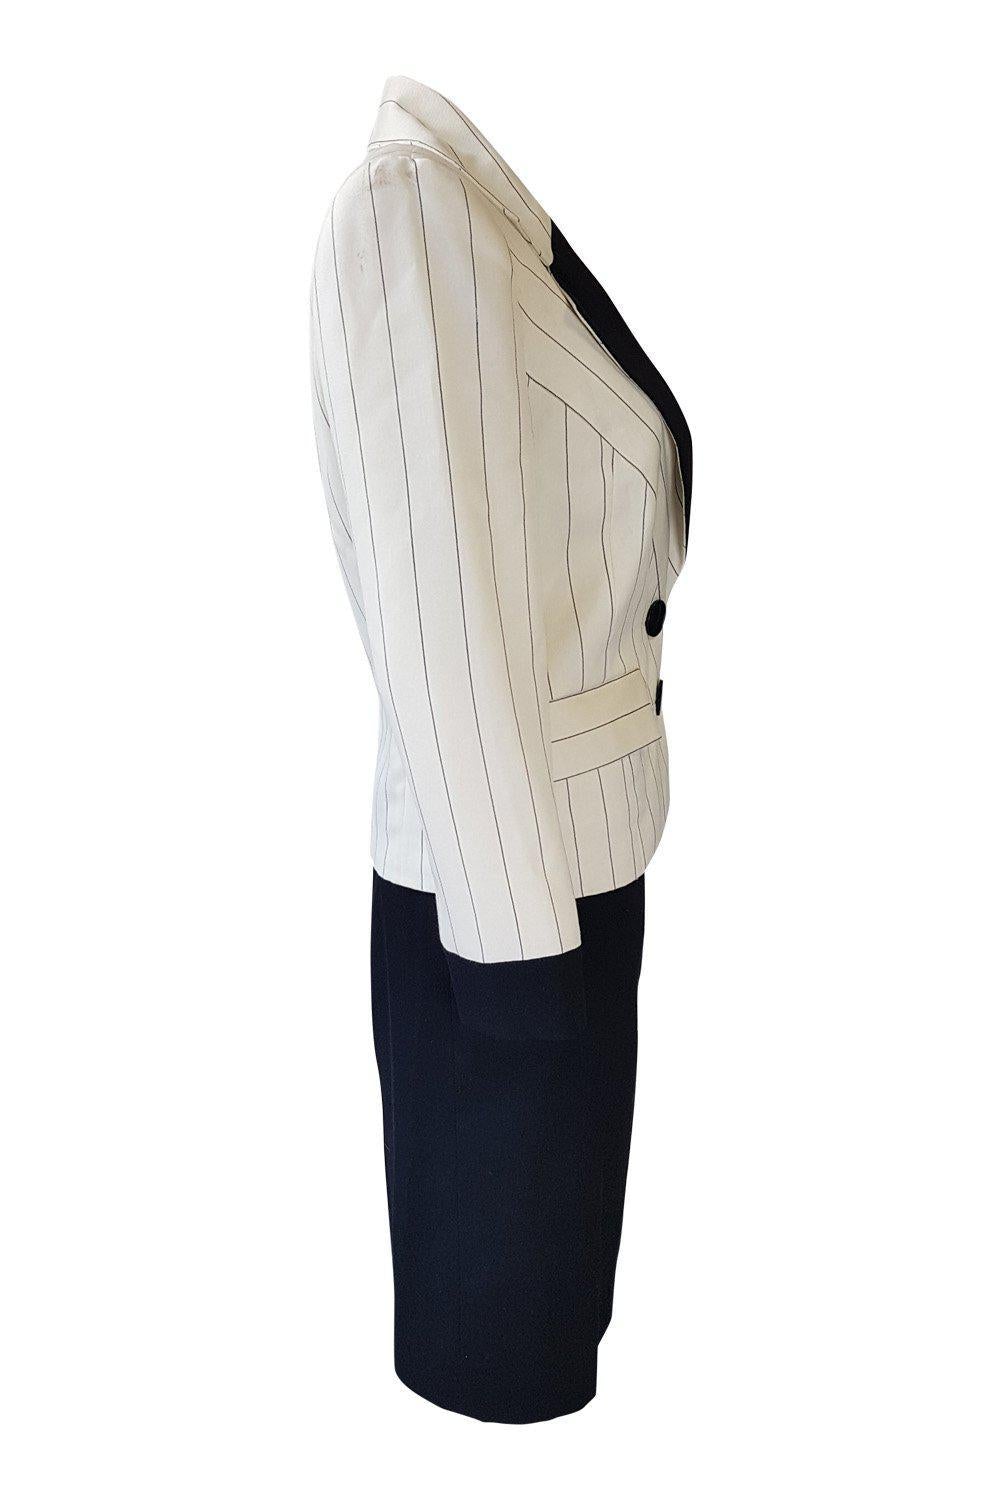 PIERRE BALMAIN Paris Cream and Black Pinstripe Vintage Skirt Suit (FR 36)-Pierre Balmain-The Freperie